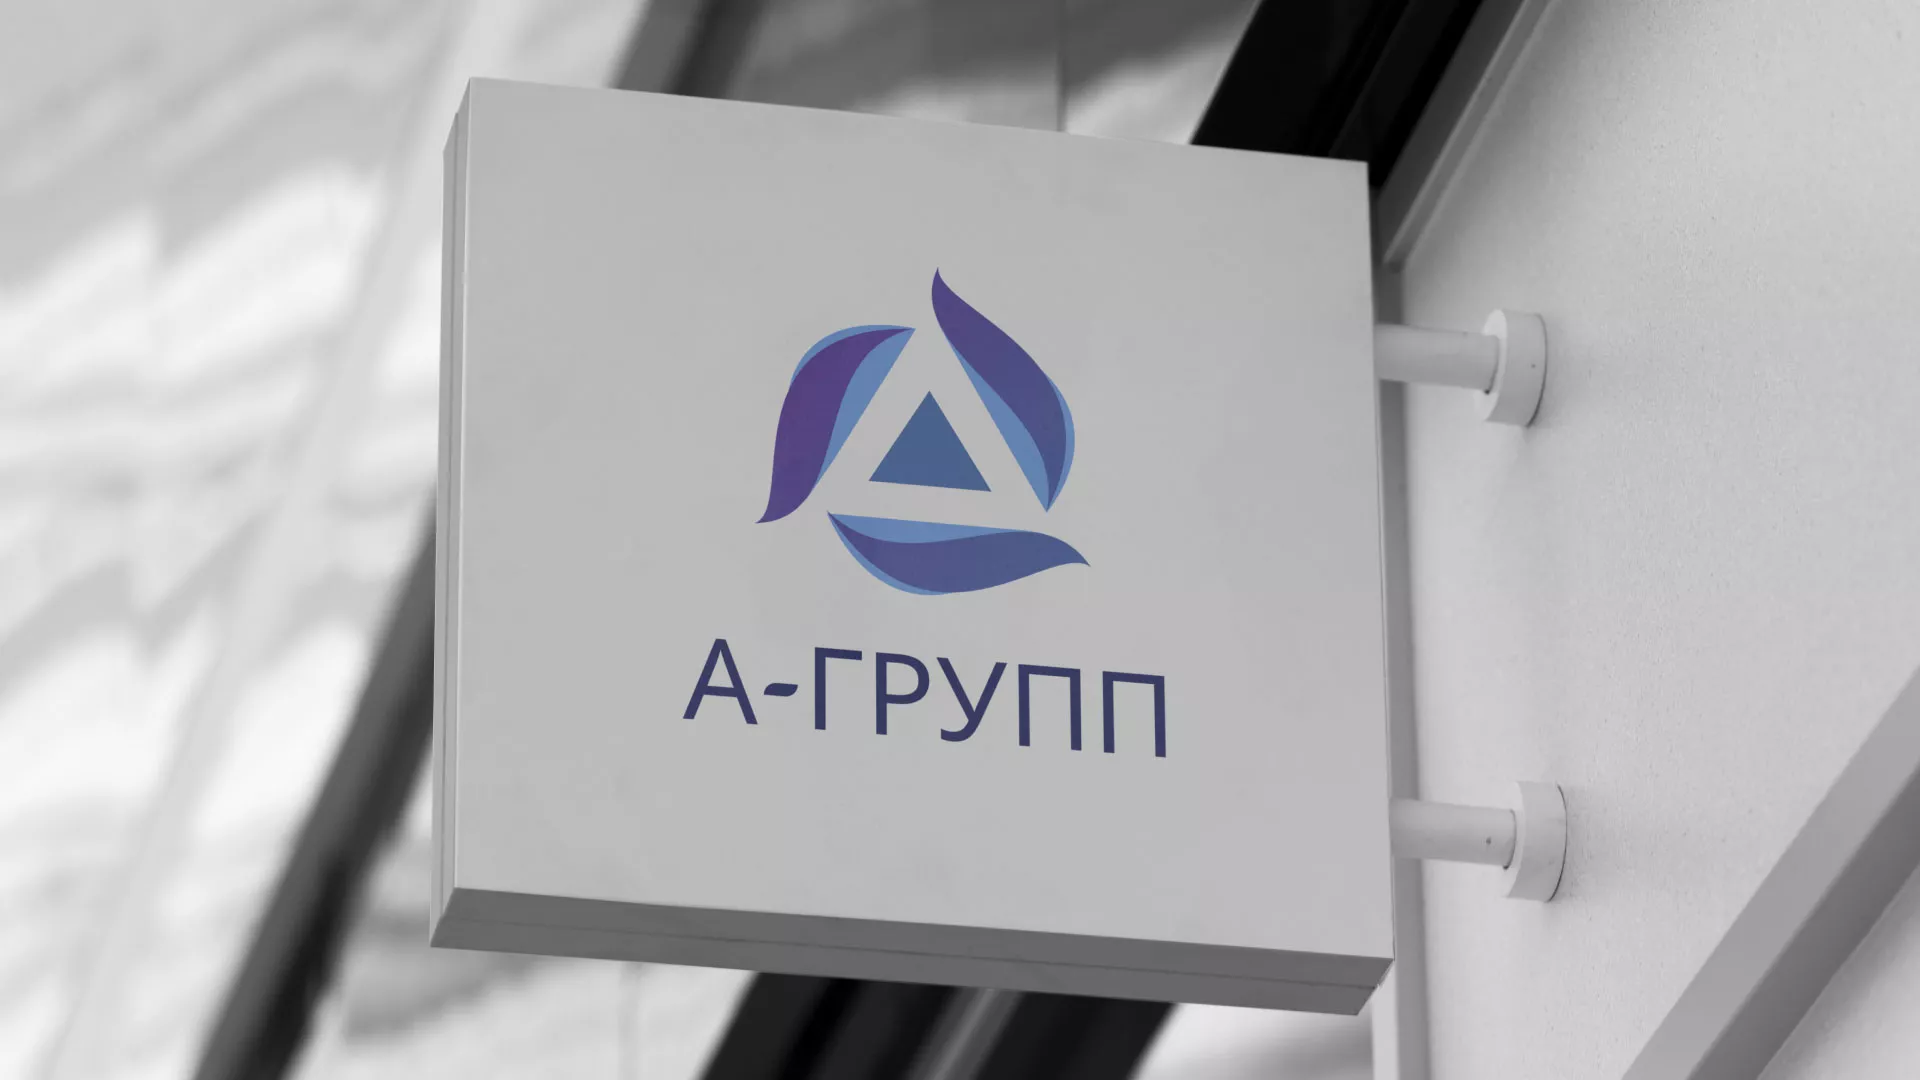 Создание логотипа компании «А-ГРУПП» в Пыталово